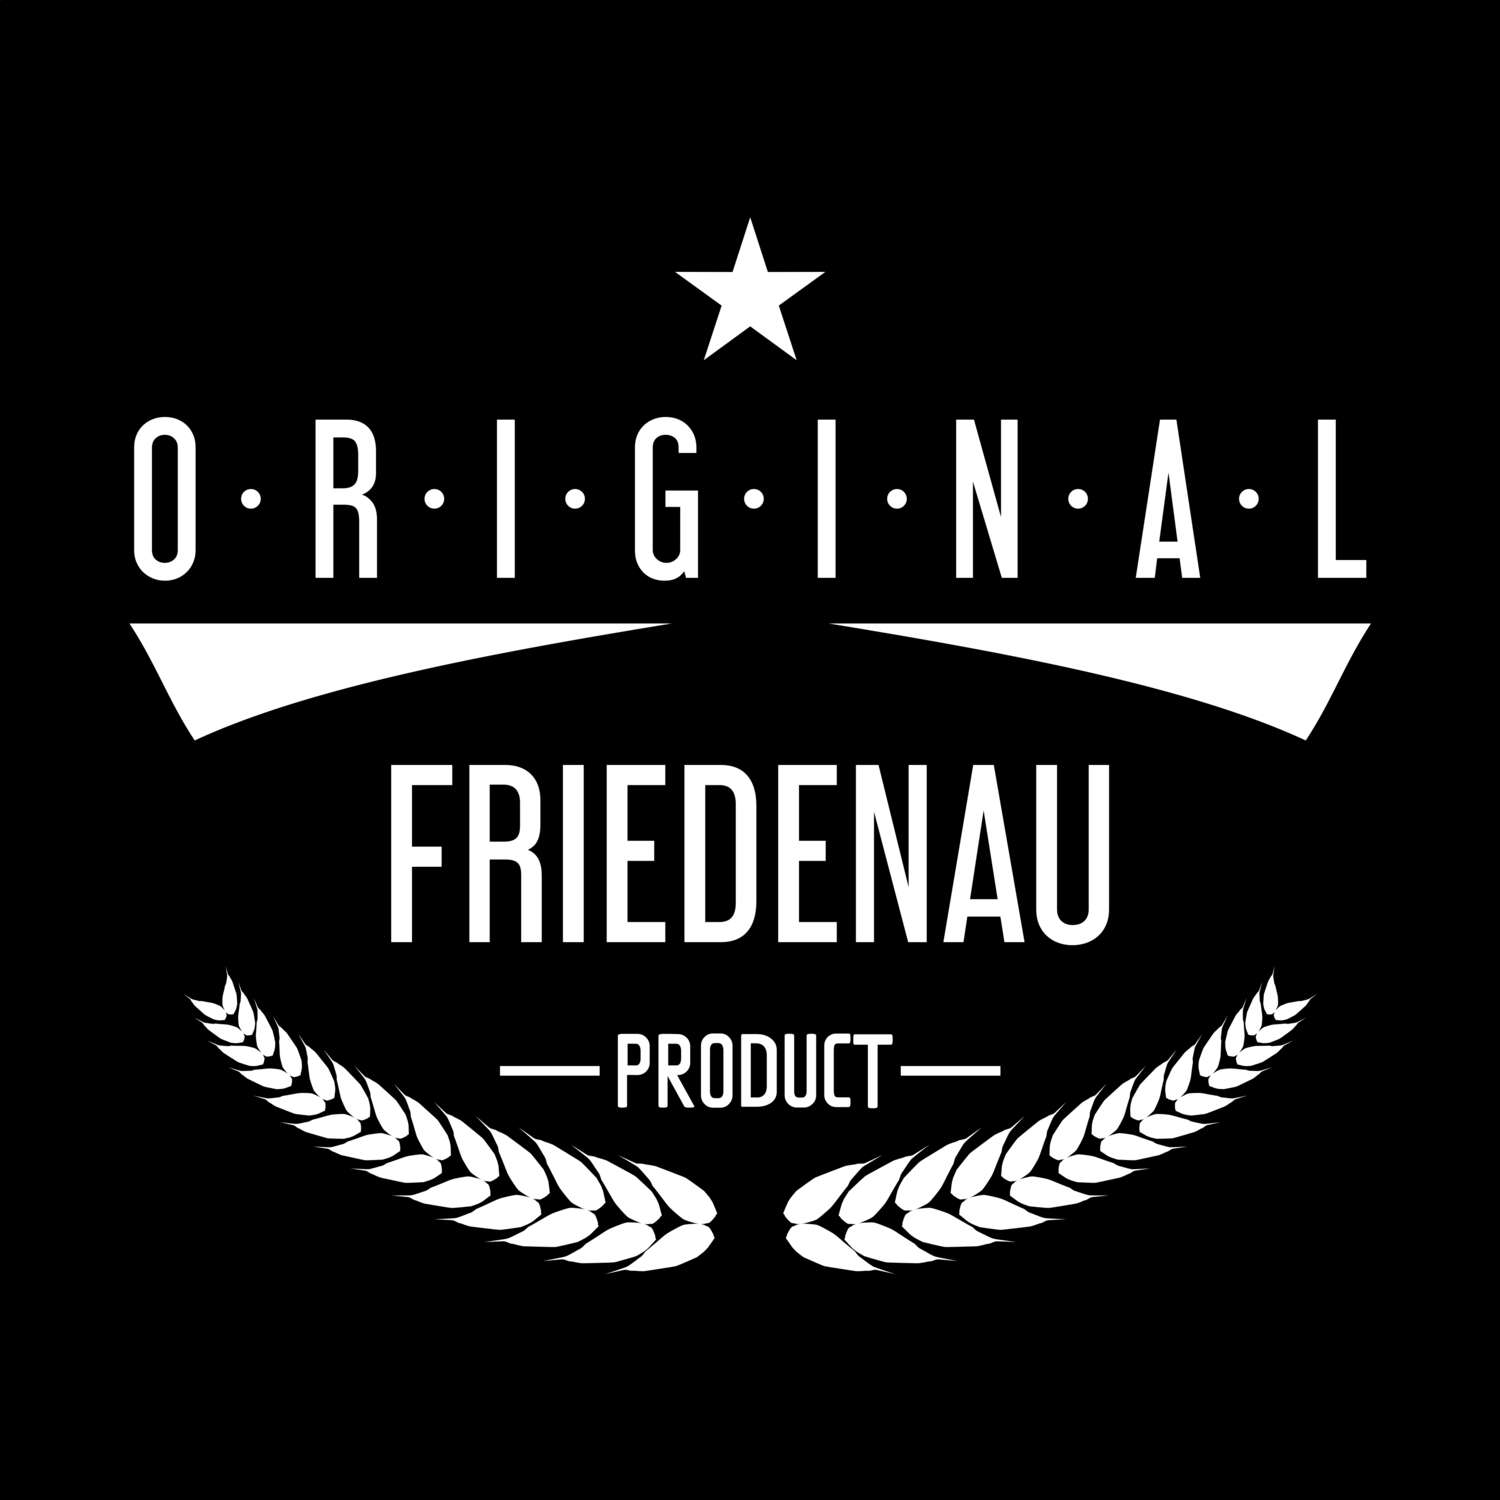 Friedenau T-Shirt »Original Product«